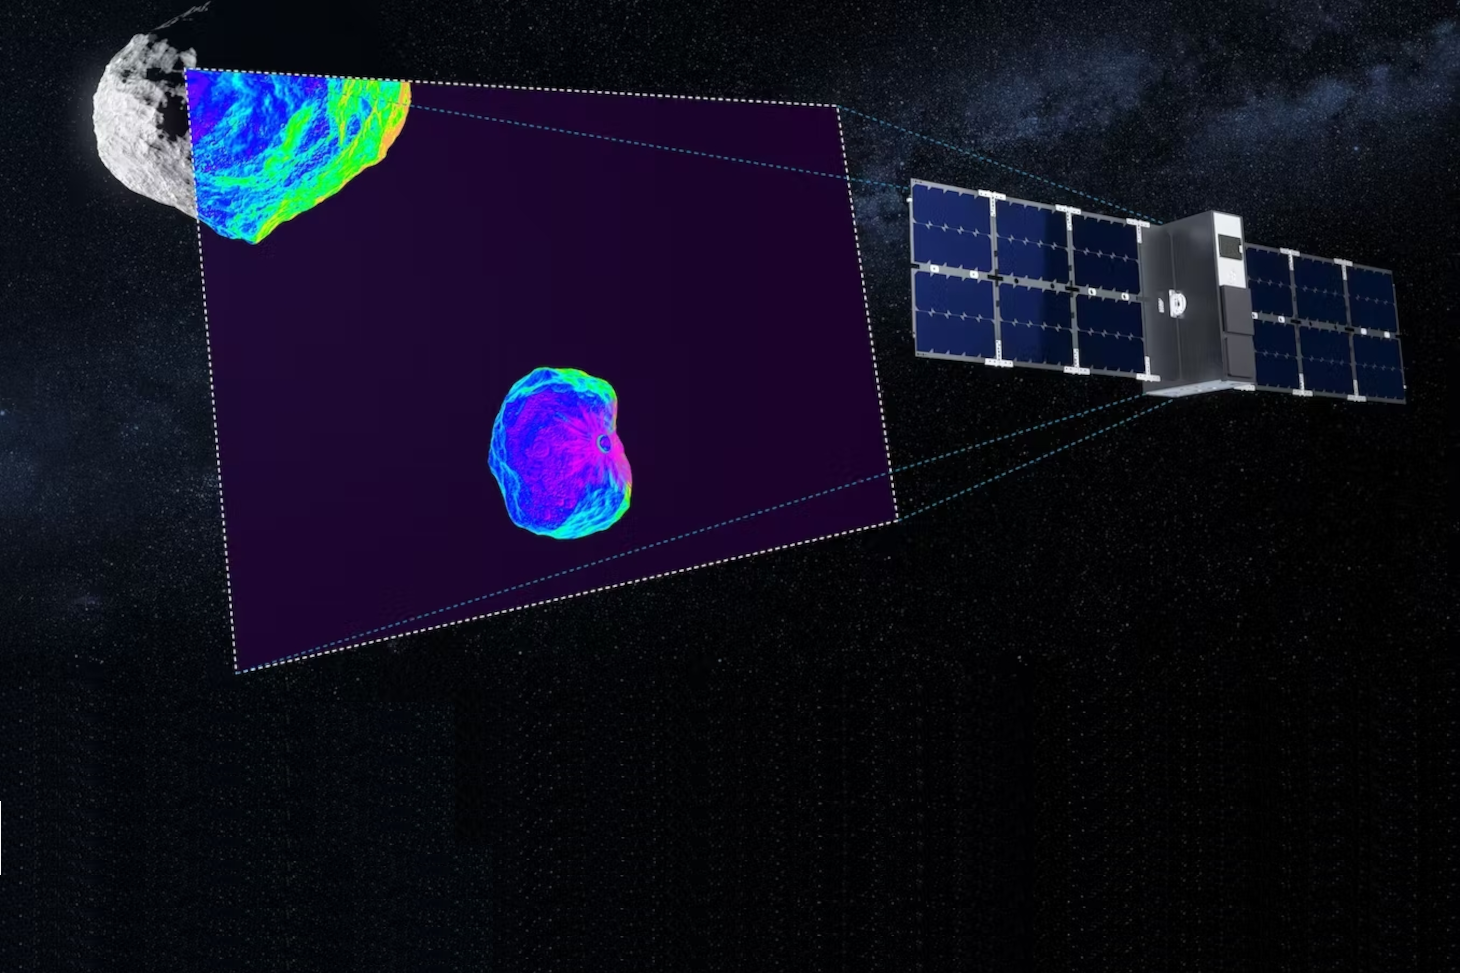 Le nanosatellite Milani imagera la lune Dimorphos et l'astéroïde Didymos dans l'infrarouge après l'impact (vue d'artiste). ESA